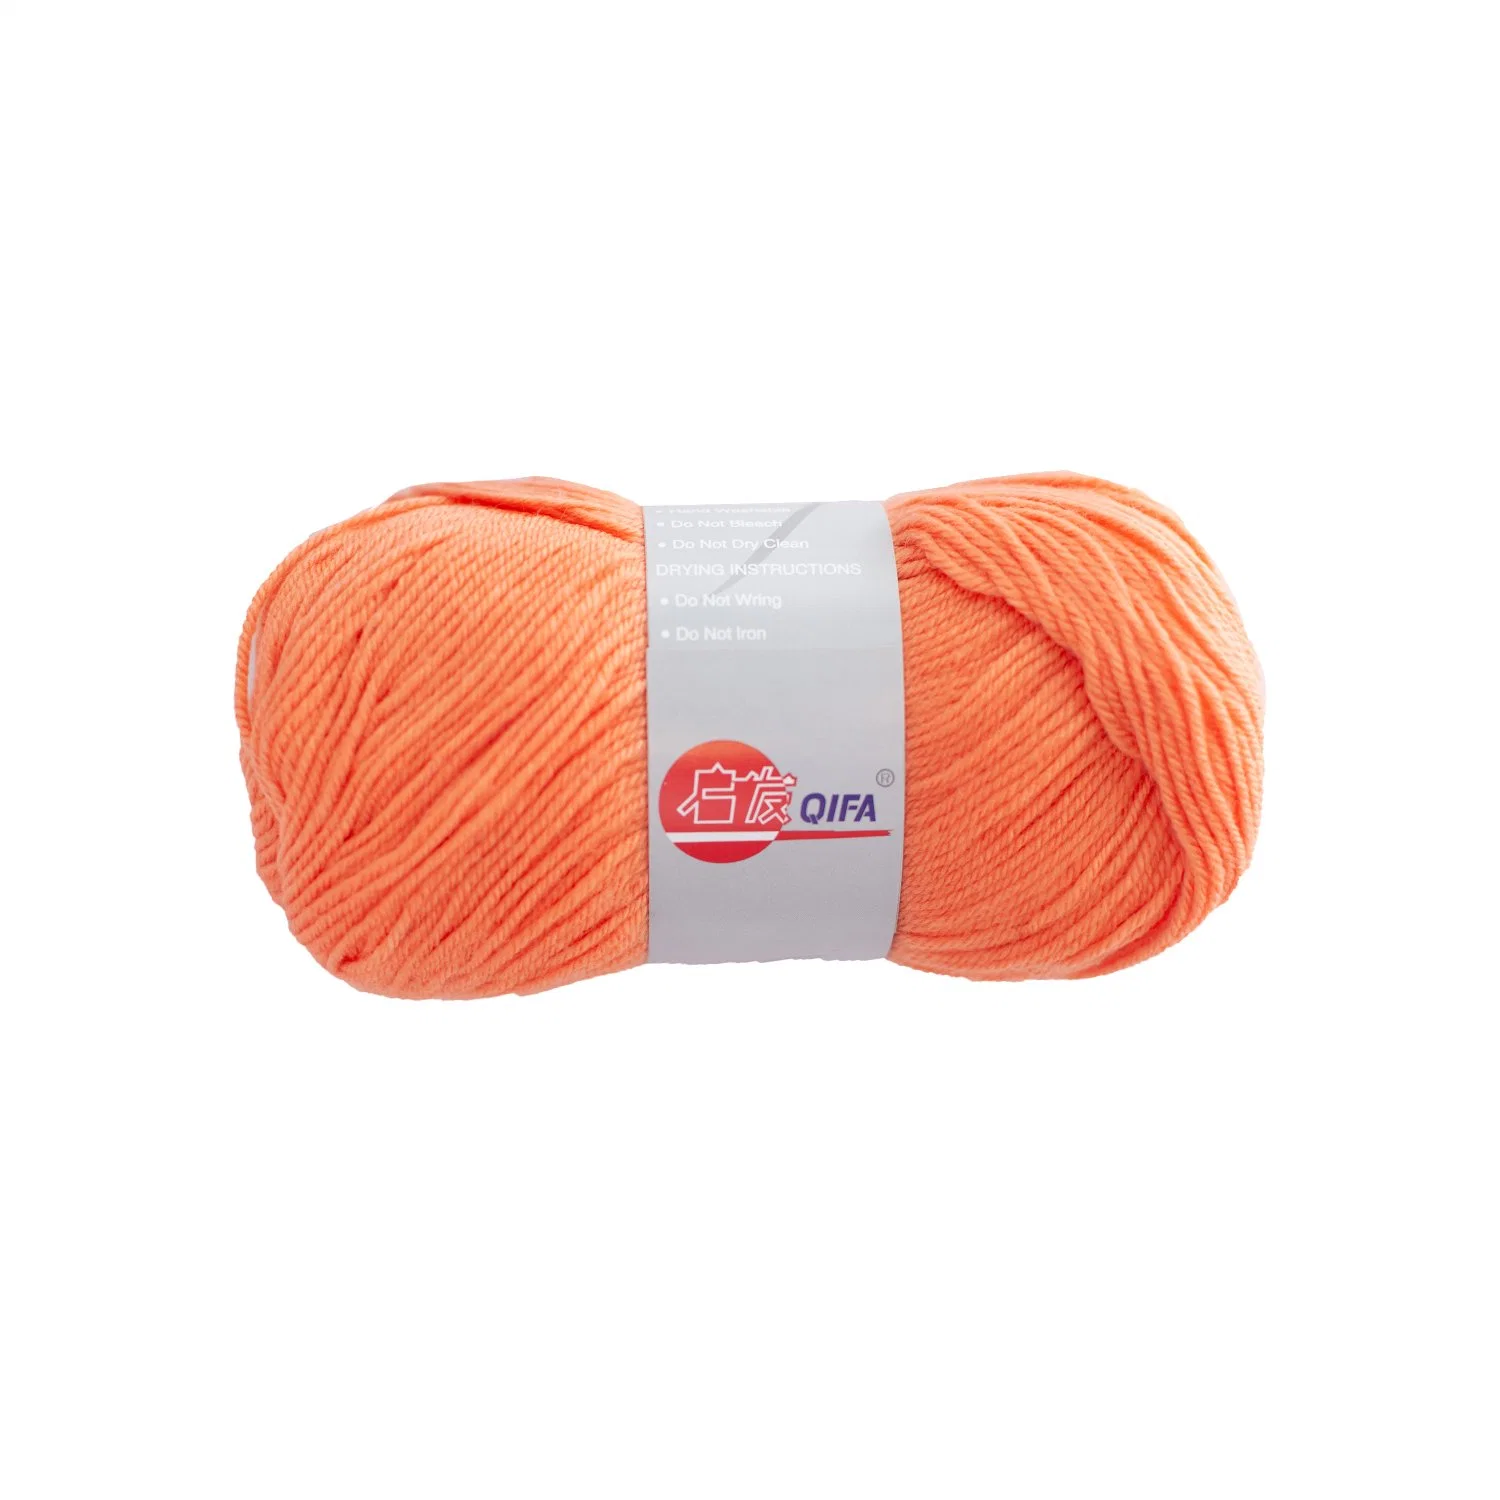 Teints délicate doux Crochet main tricoter 100 % laine mérinos pour la vente